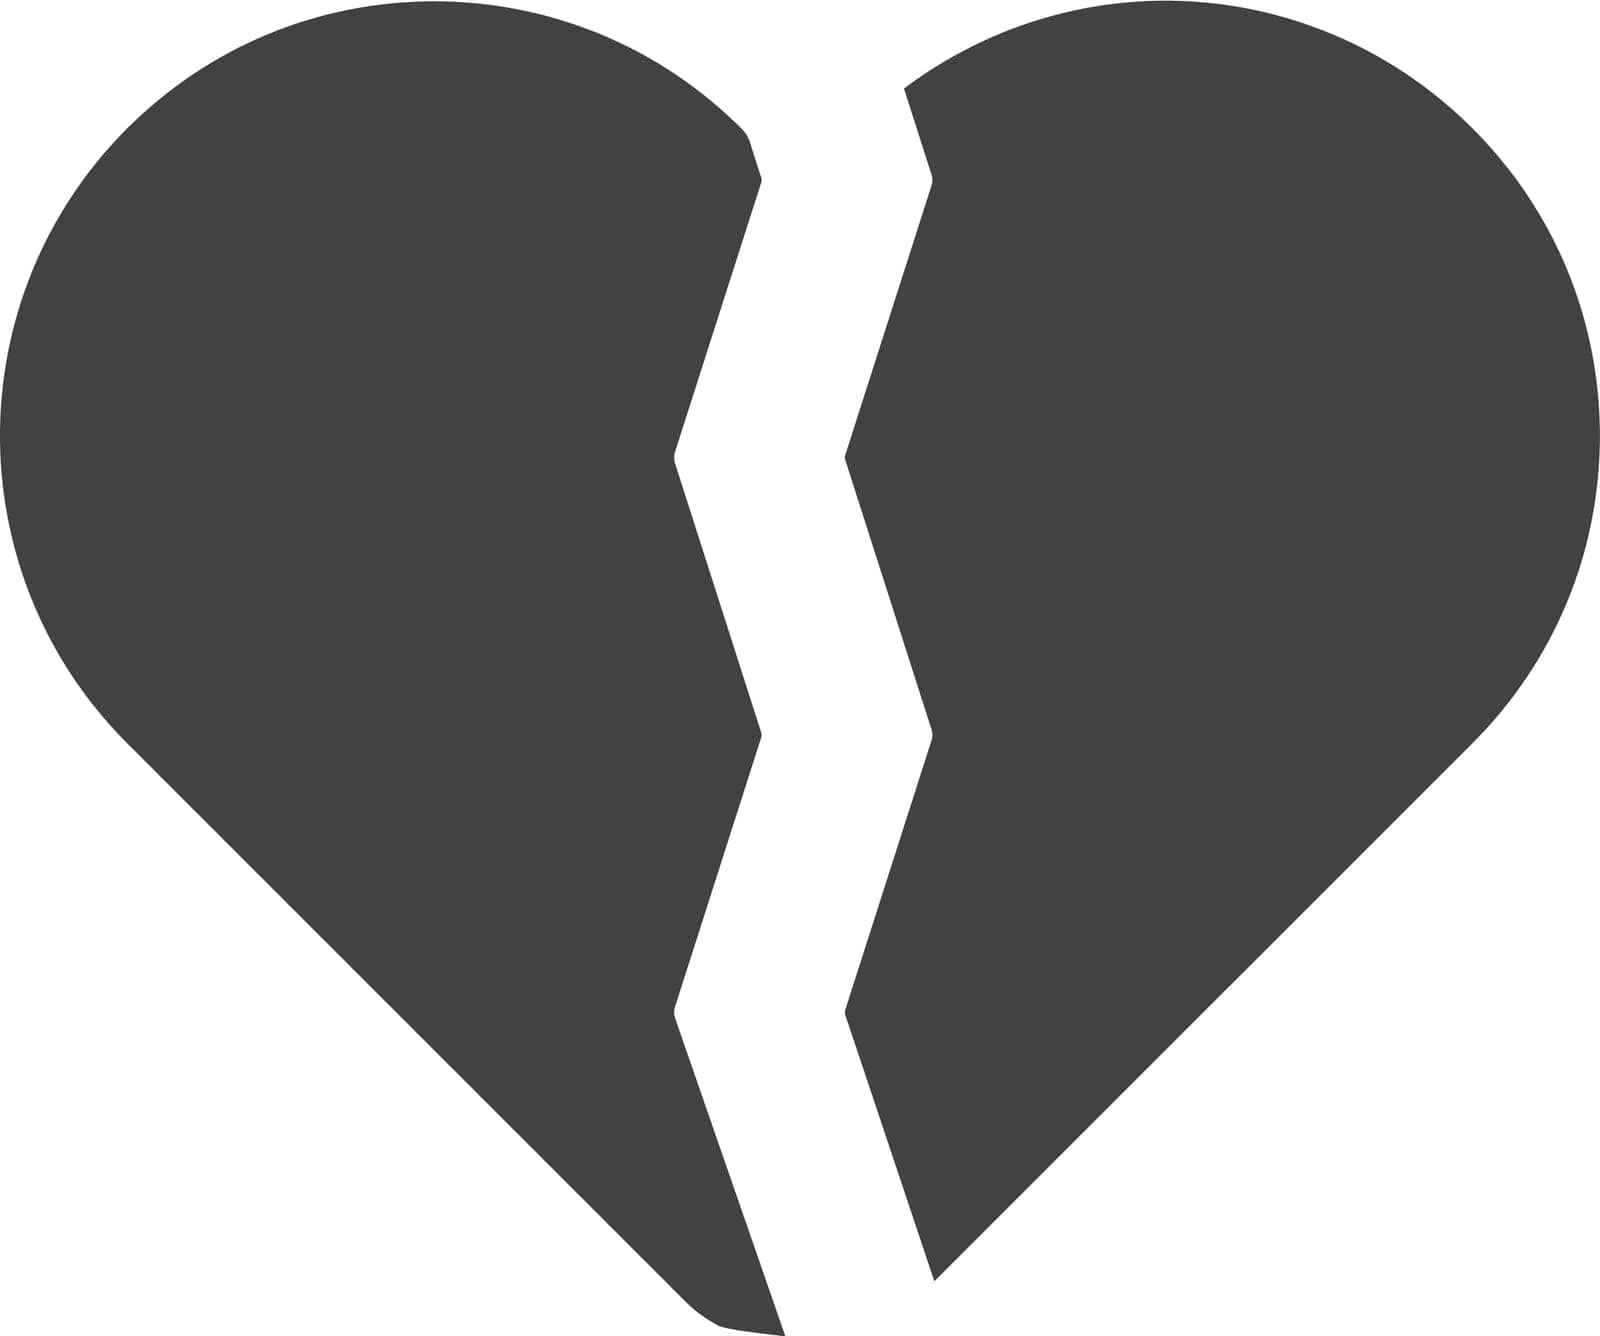 Broken Heart icon vector image. by ICONBUNNY